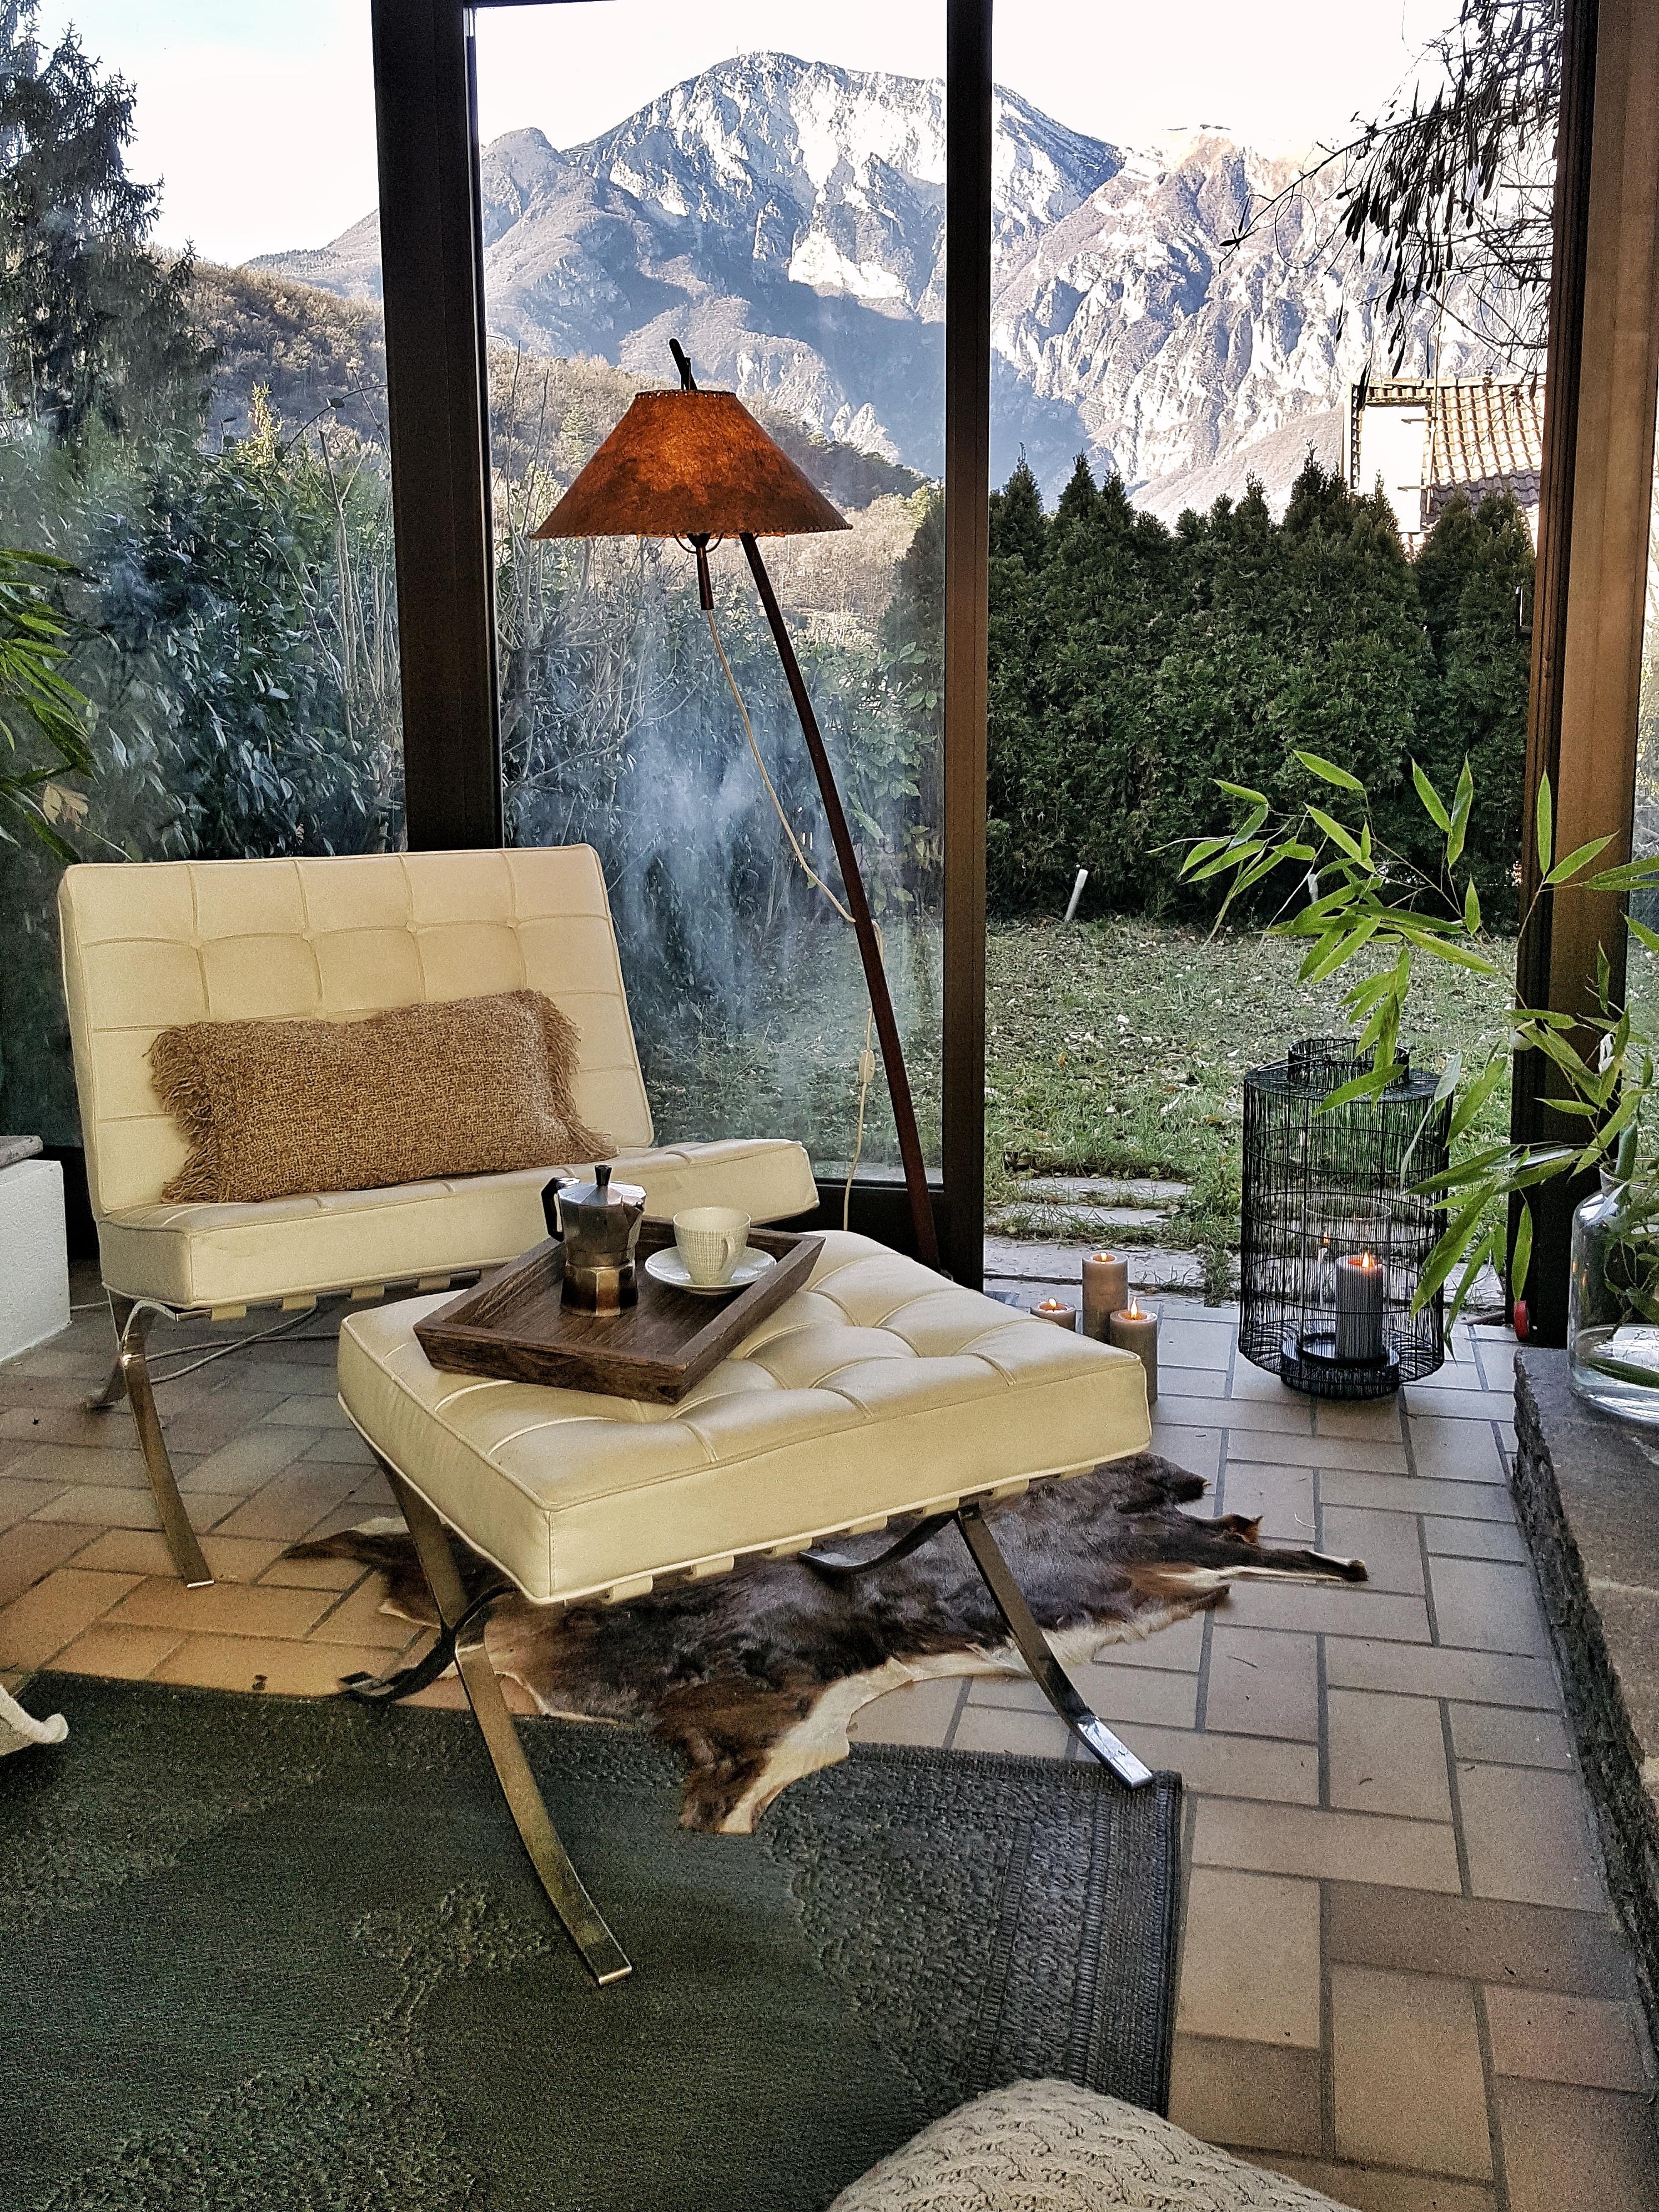 #wohnzimmer #interior #home #couchliebt #deko #hygge #midcentury #vintage #cozy